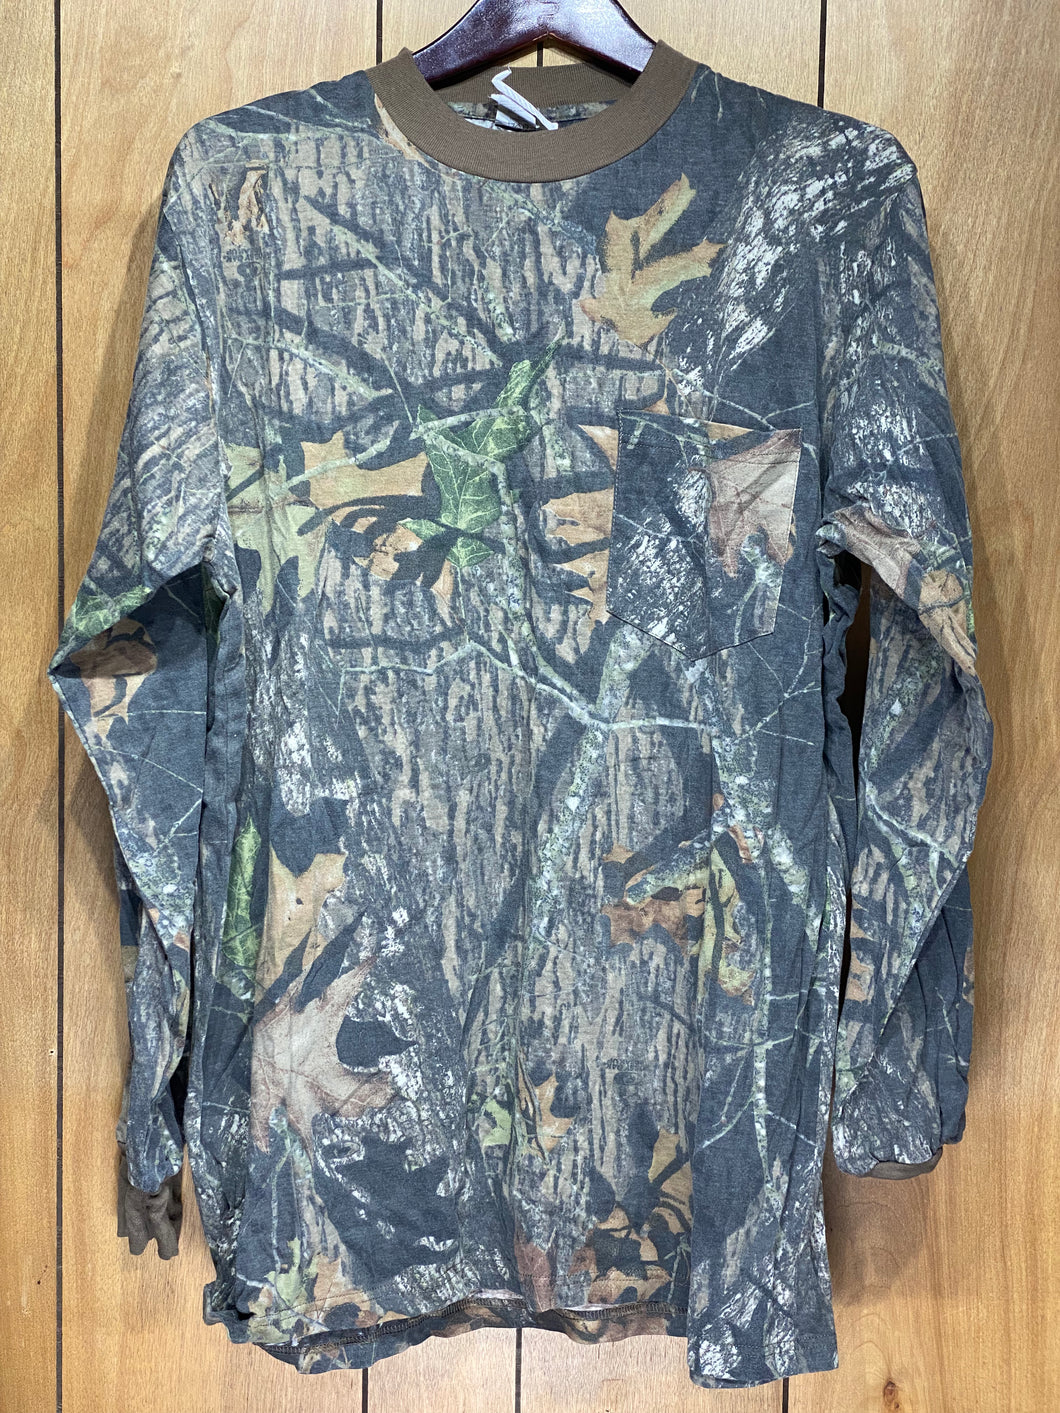 Mossy Oak Break Up Shirt (XL)